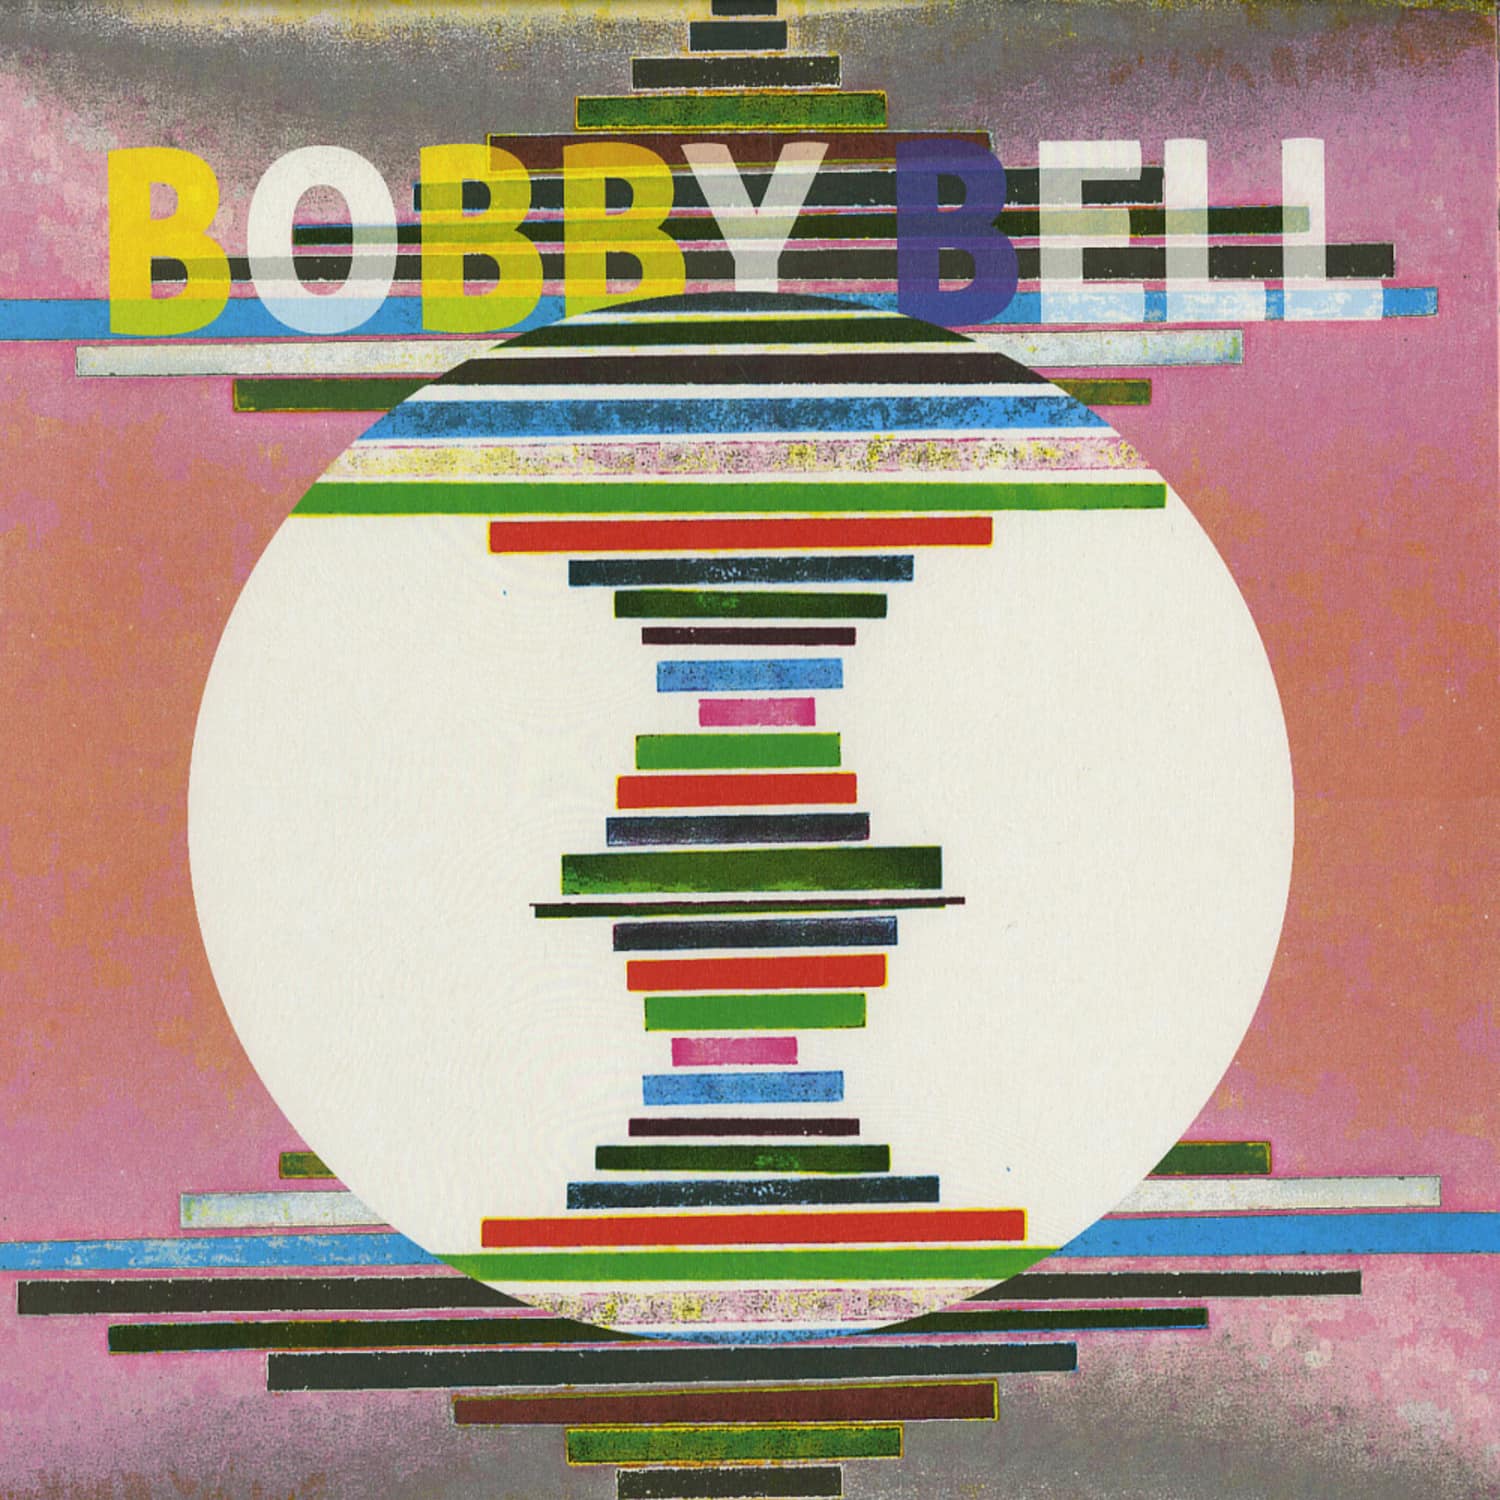 Bobby Bell - LONG JOURNEY